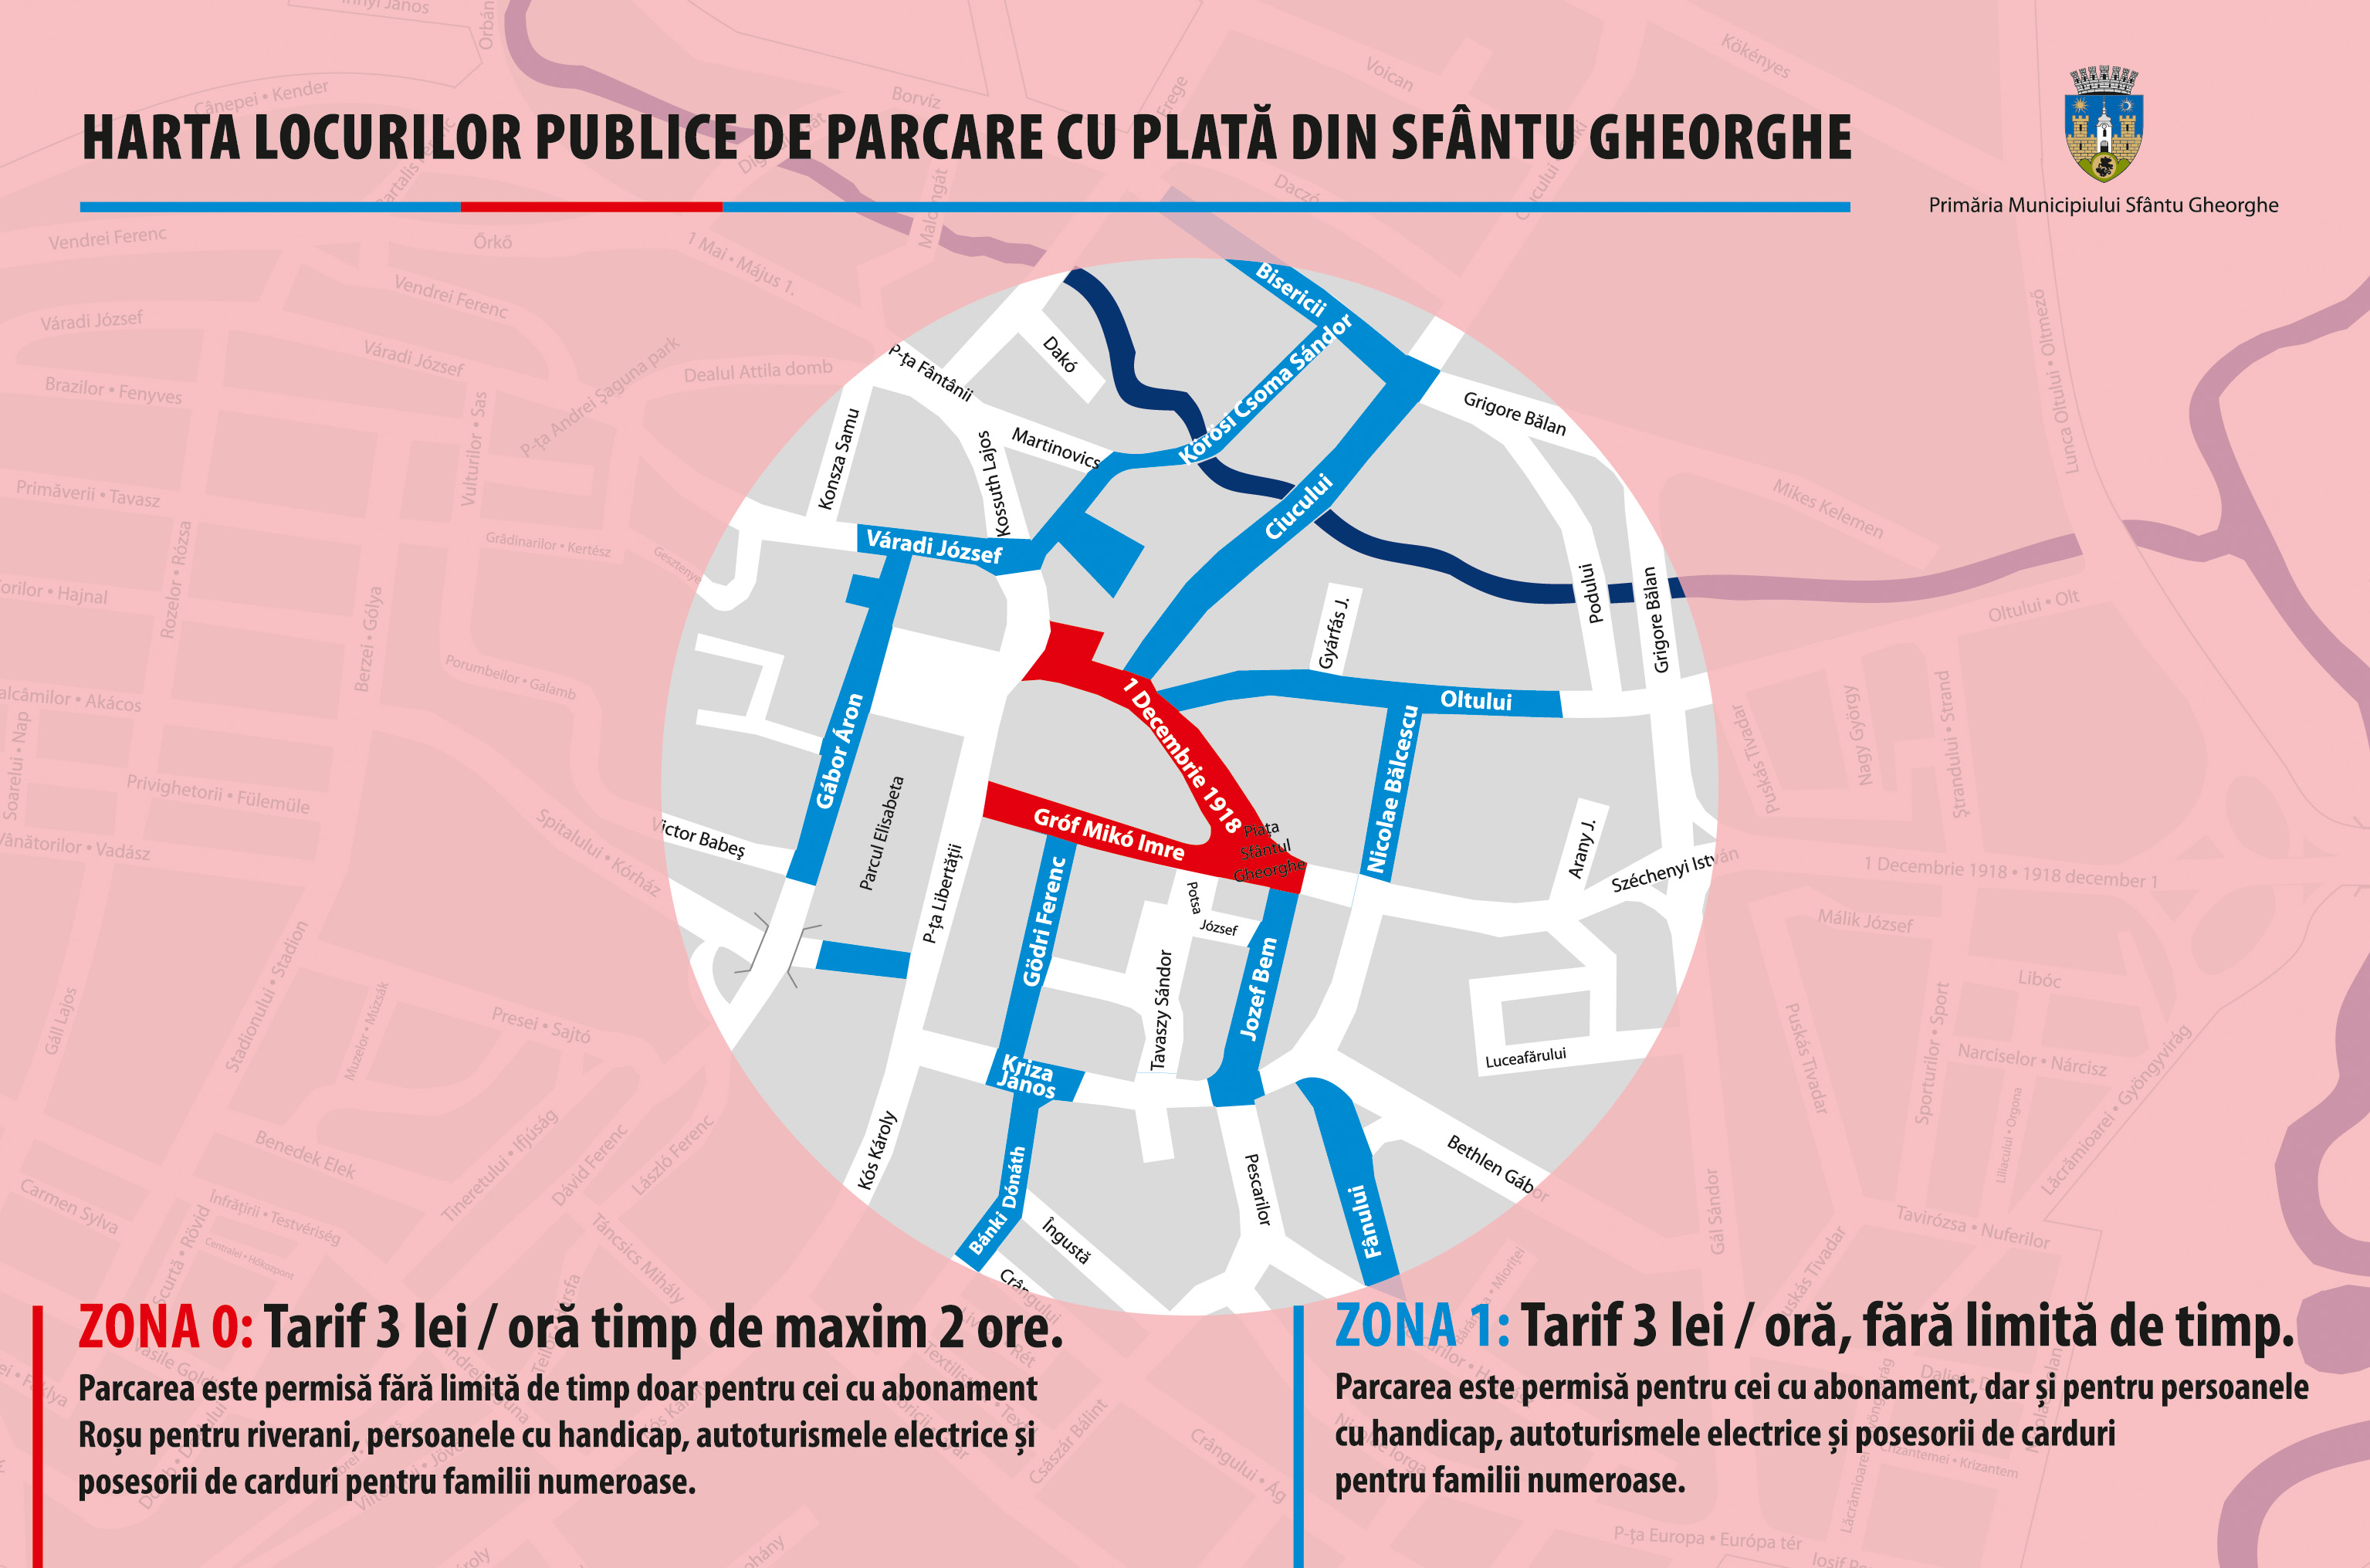 Din 7 februarie intră în vigoare noile reguli de parcare în centrul oraşului